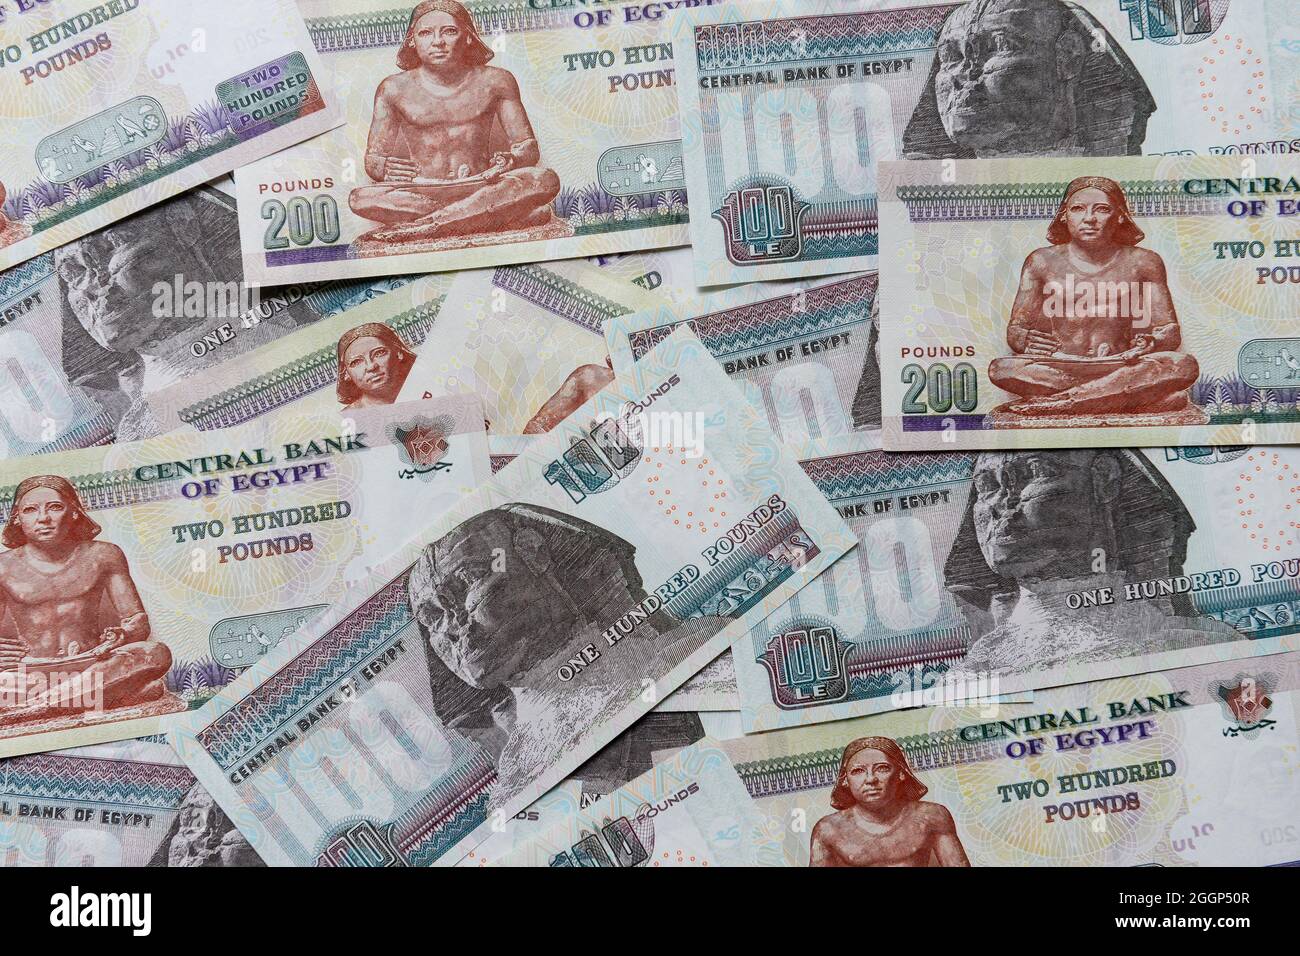 EGYPT, Pound banknotes, image Sphinx of Gizeh / ÄGYPTEN, ägyptische Pound Banknoten, Bild Große Sphinx von Gizeh Stock Photo